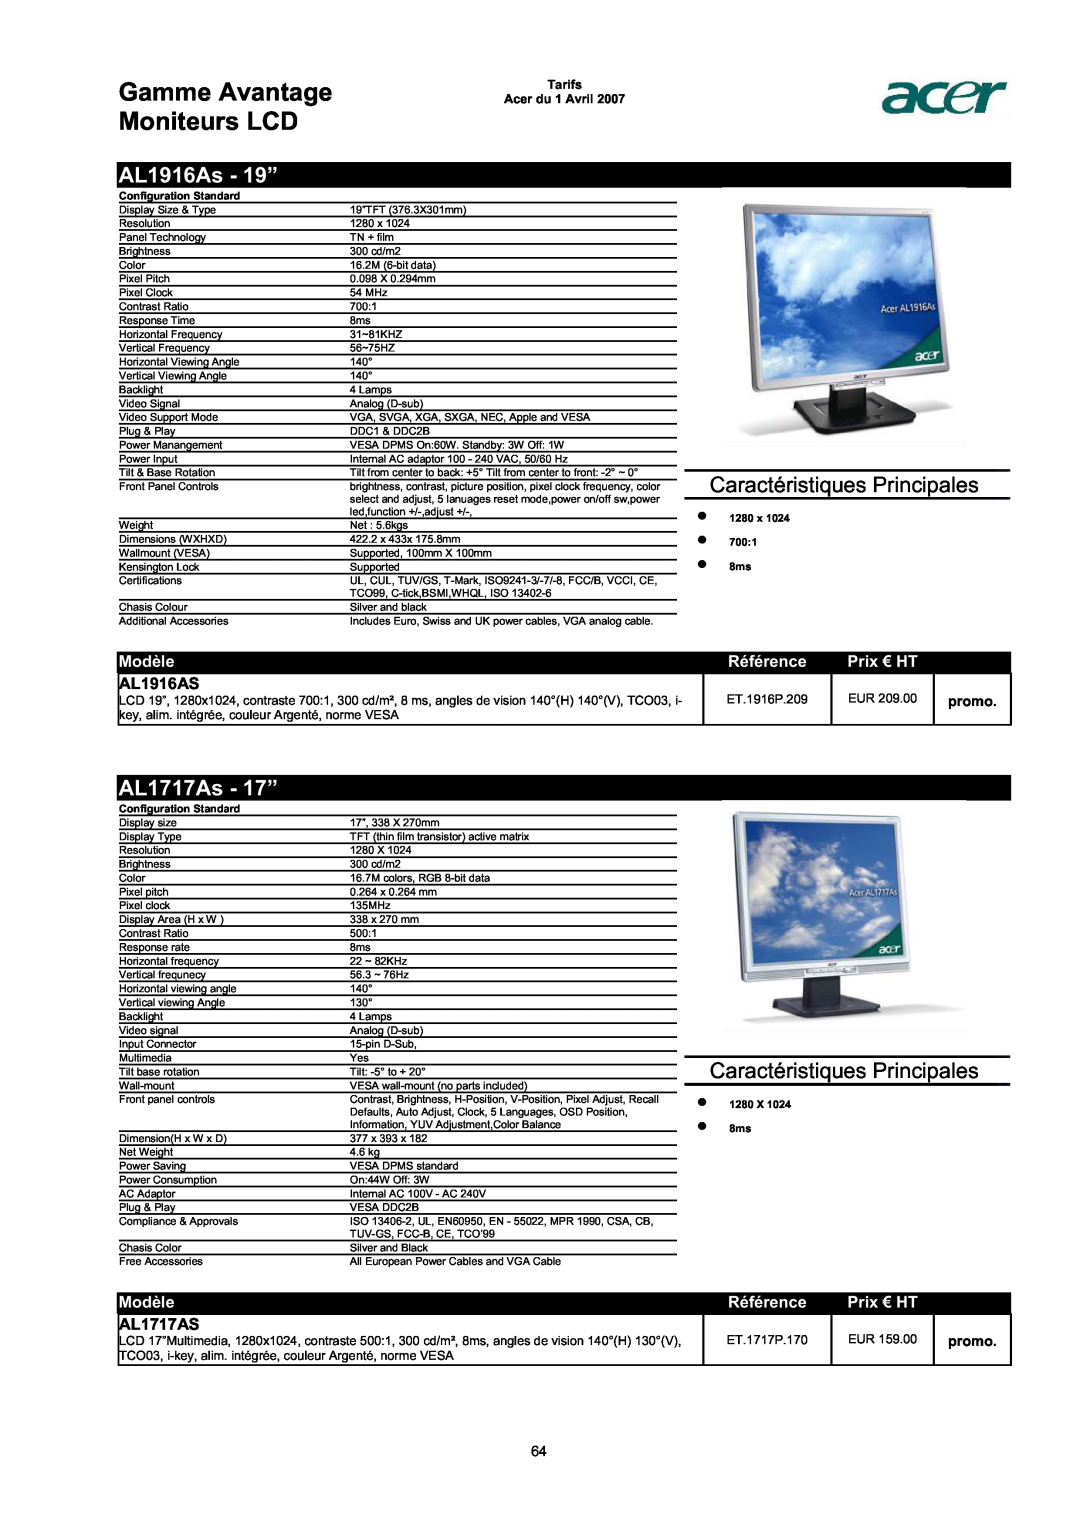 Acer AC713B-17 AL1916As - 19”, AL1717As - 17”, AL1916AS, AL1717AS, Gamme Avantage Moniteurs LCD, Modèle, Référence, promo 